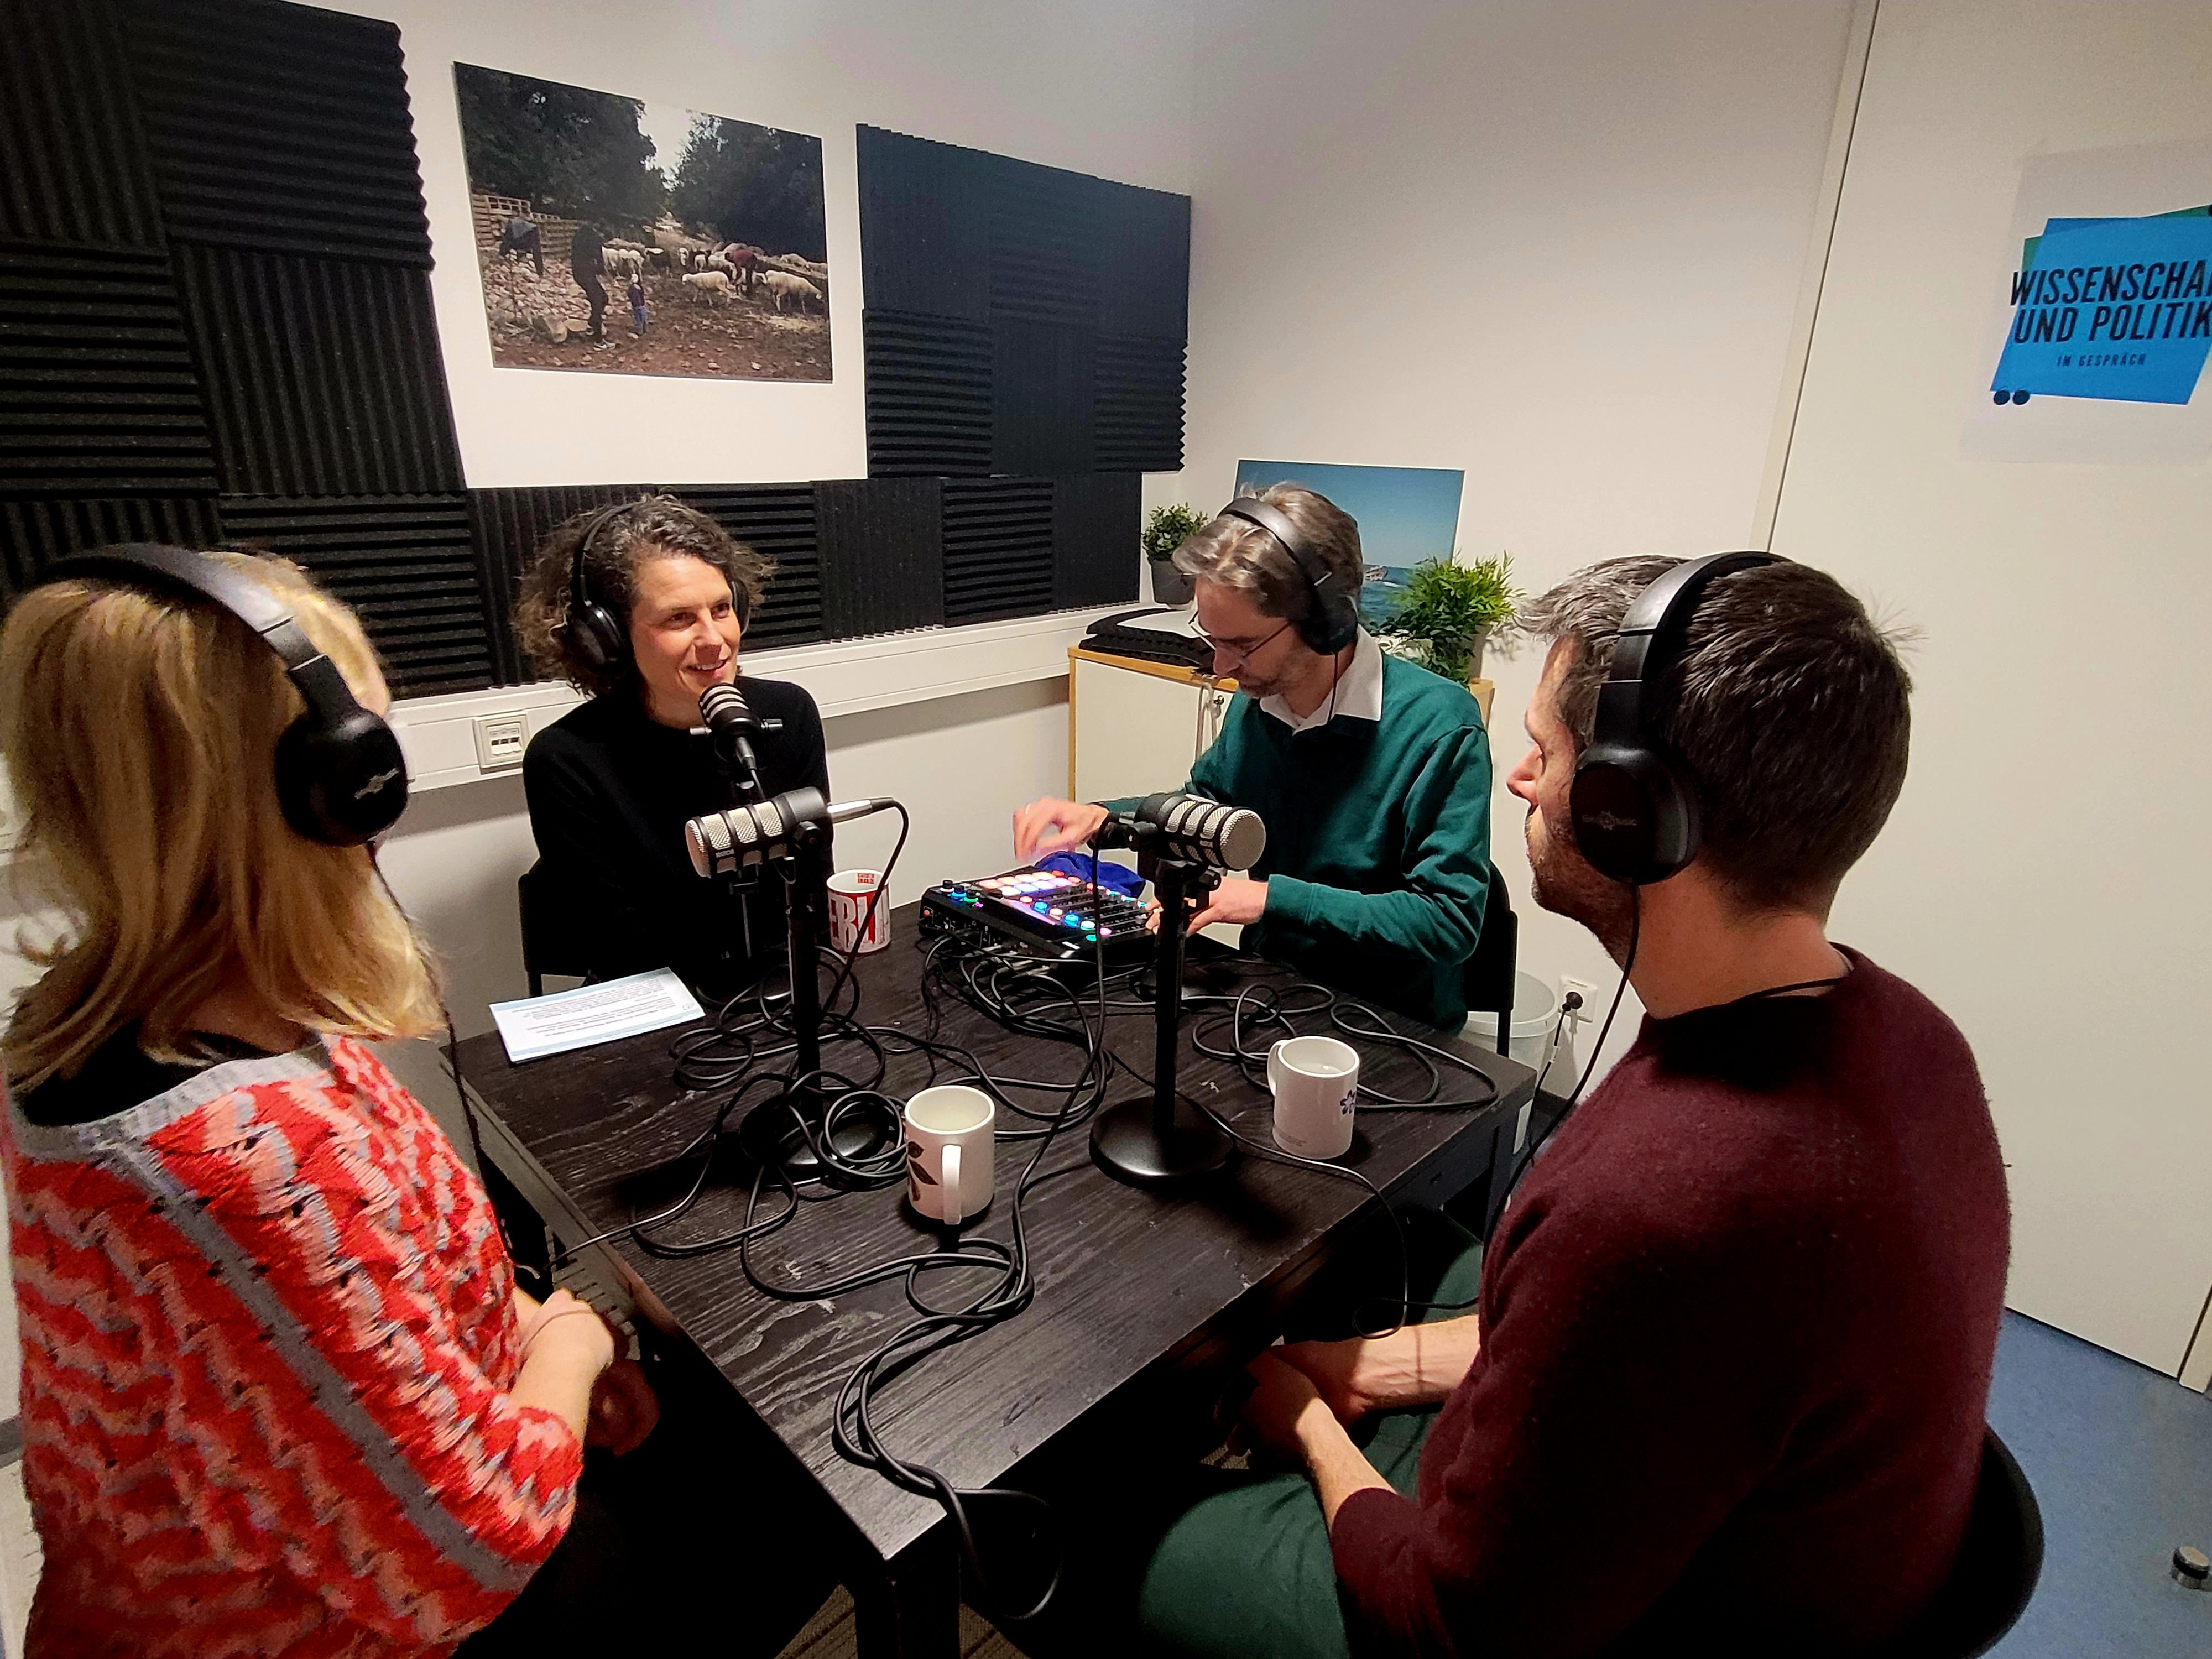 Podcast bringt Wissenschaft und Politik ins Gespräch